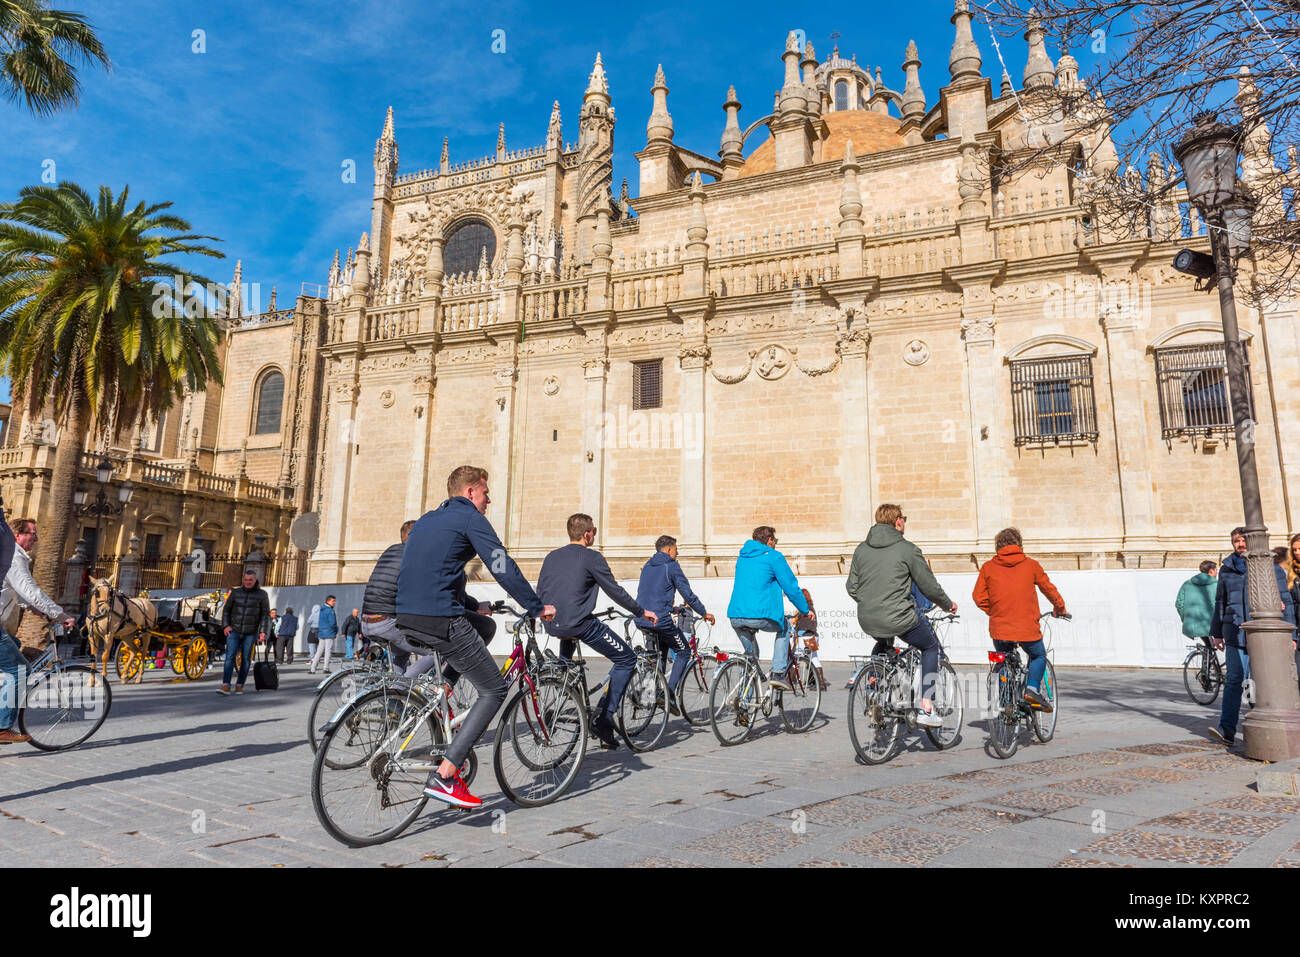 Los turistas en bicicleta alrededor de la Catedral de Sevilla, Sevilla, España. Foto de stock